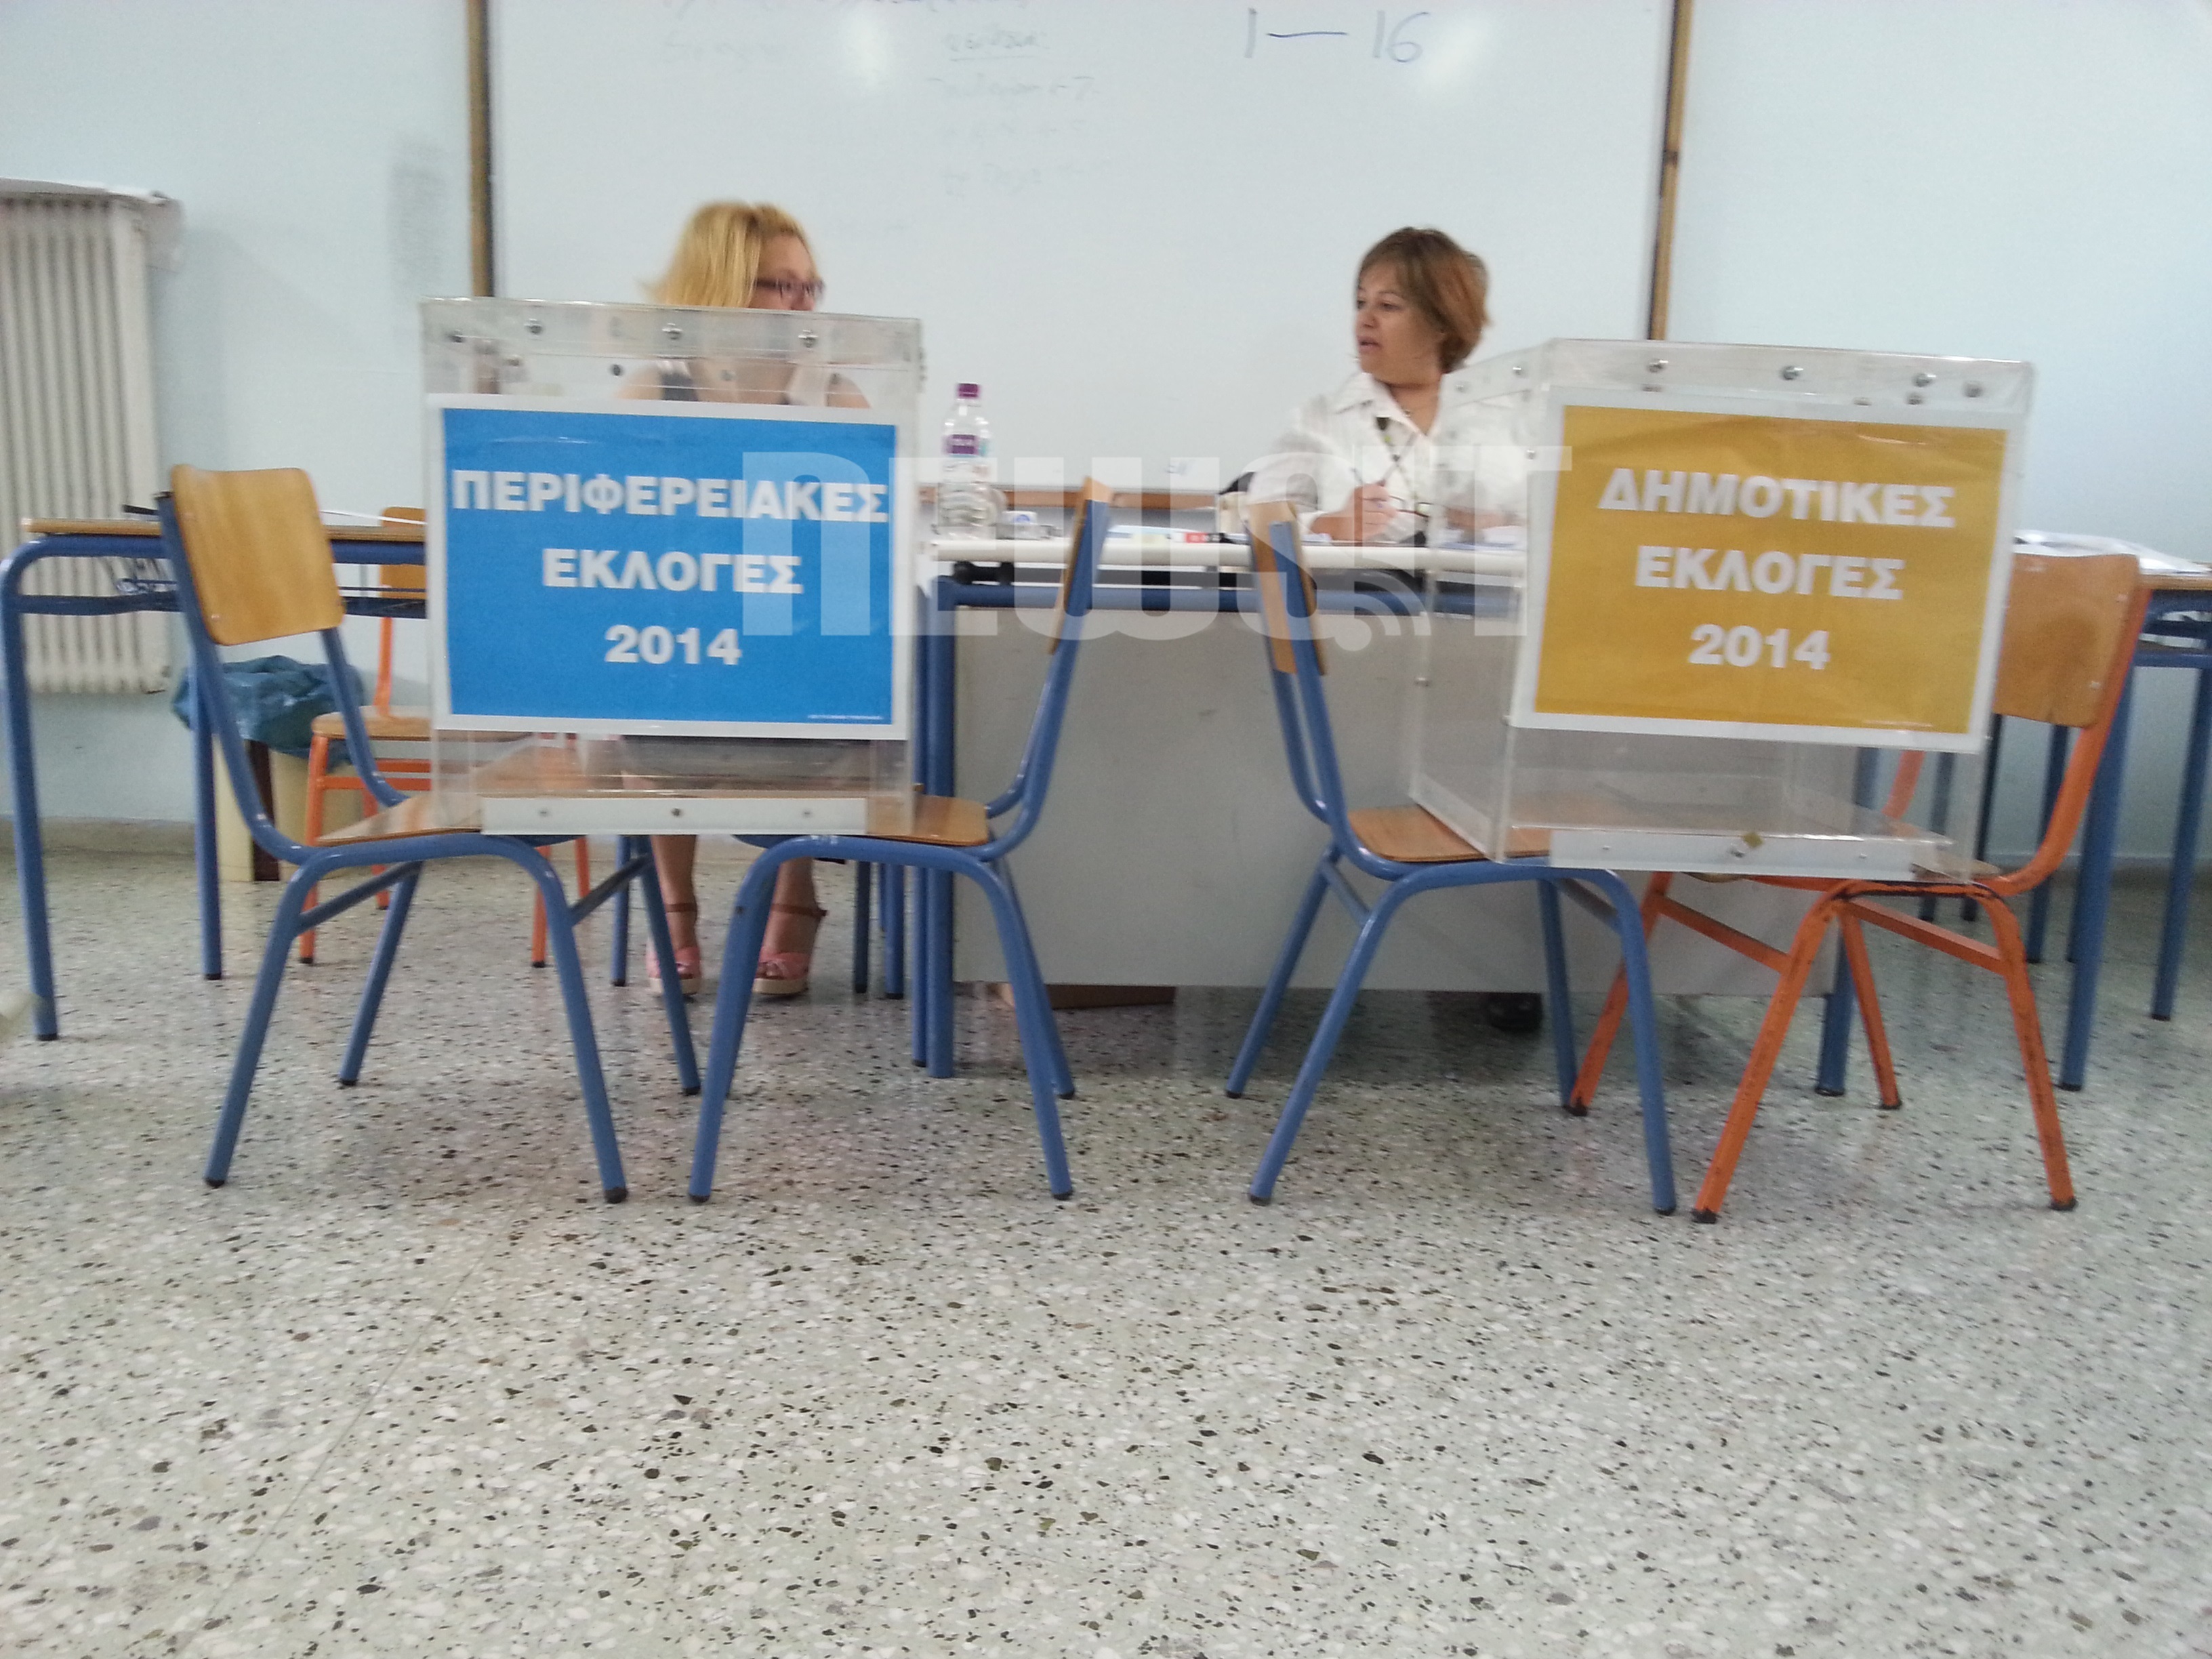 Εκλογές 2014: Αντίστροφη μέτρηση για τα αποτελέσματα – Στις 19.00 κλείνουν οι κάλπες – Τι λένε οι αρχηγοί και υποψήφιοι σε Δημοτικές και Περιφερειακές